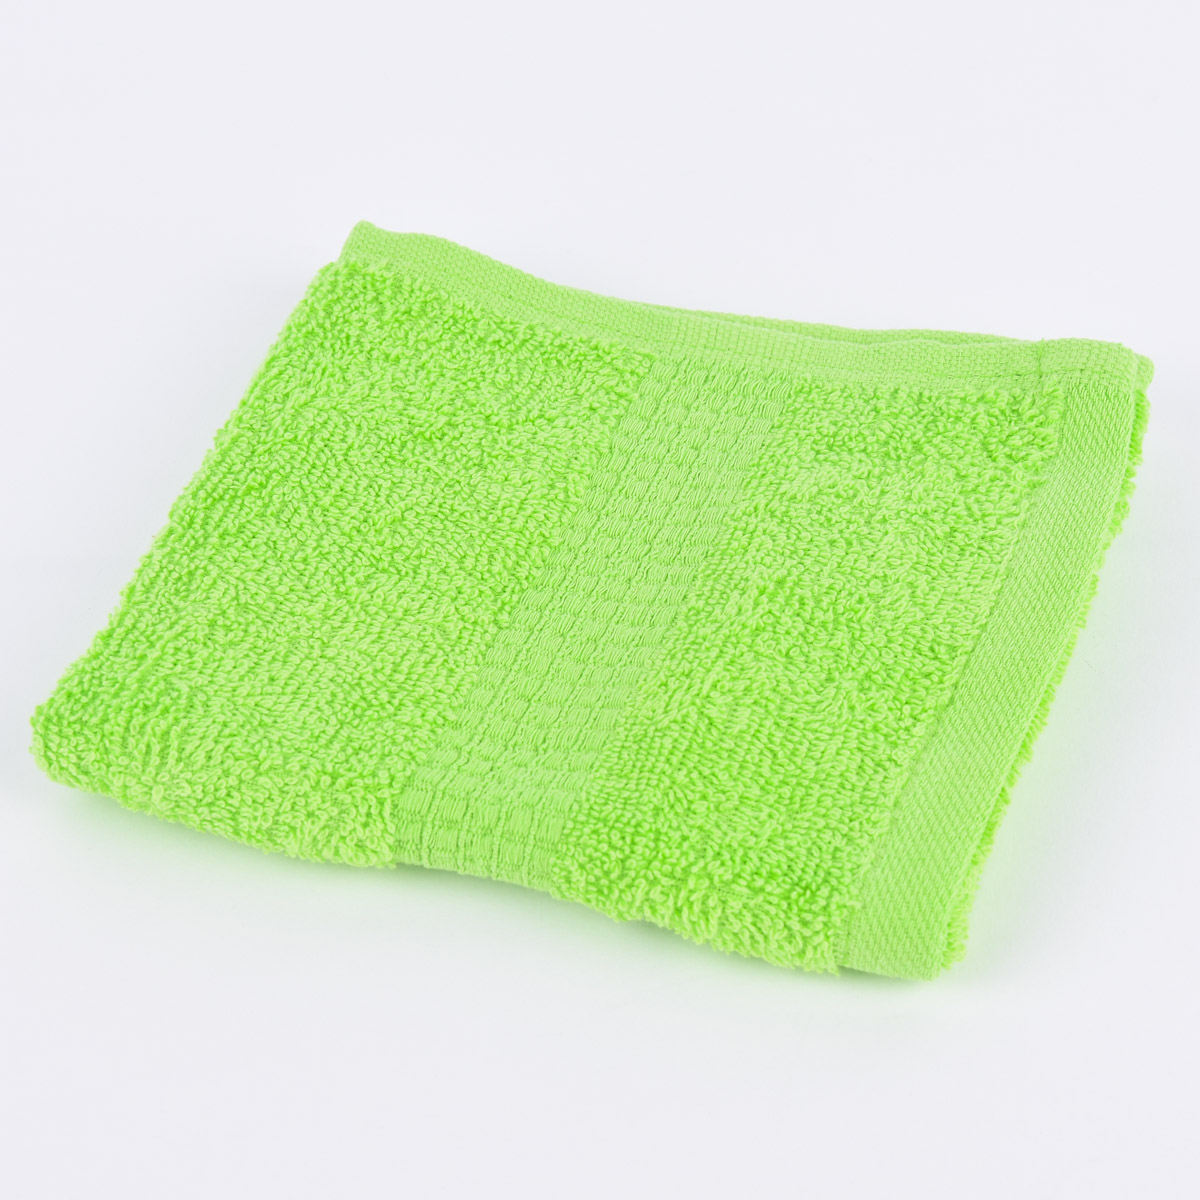 Qualitätsfrottee Handtuch 100% Baumwolle 500g/qm grün